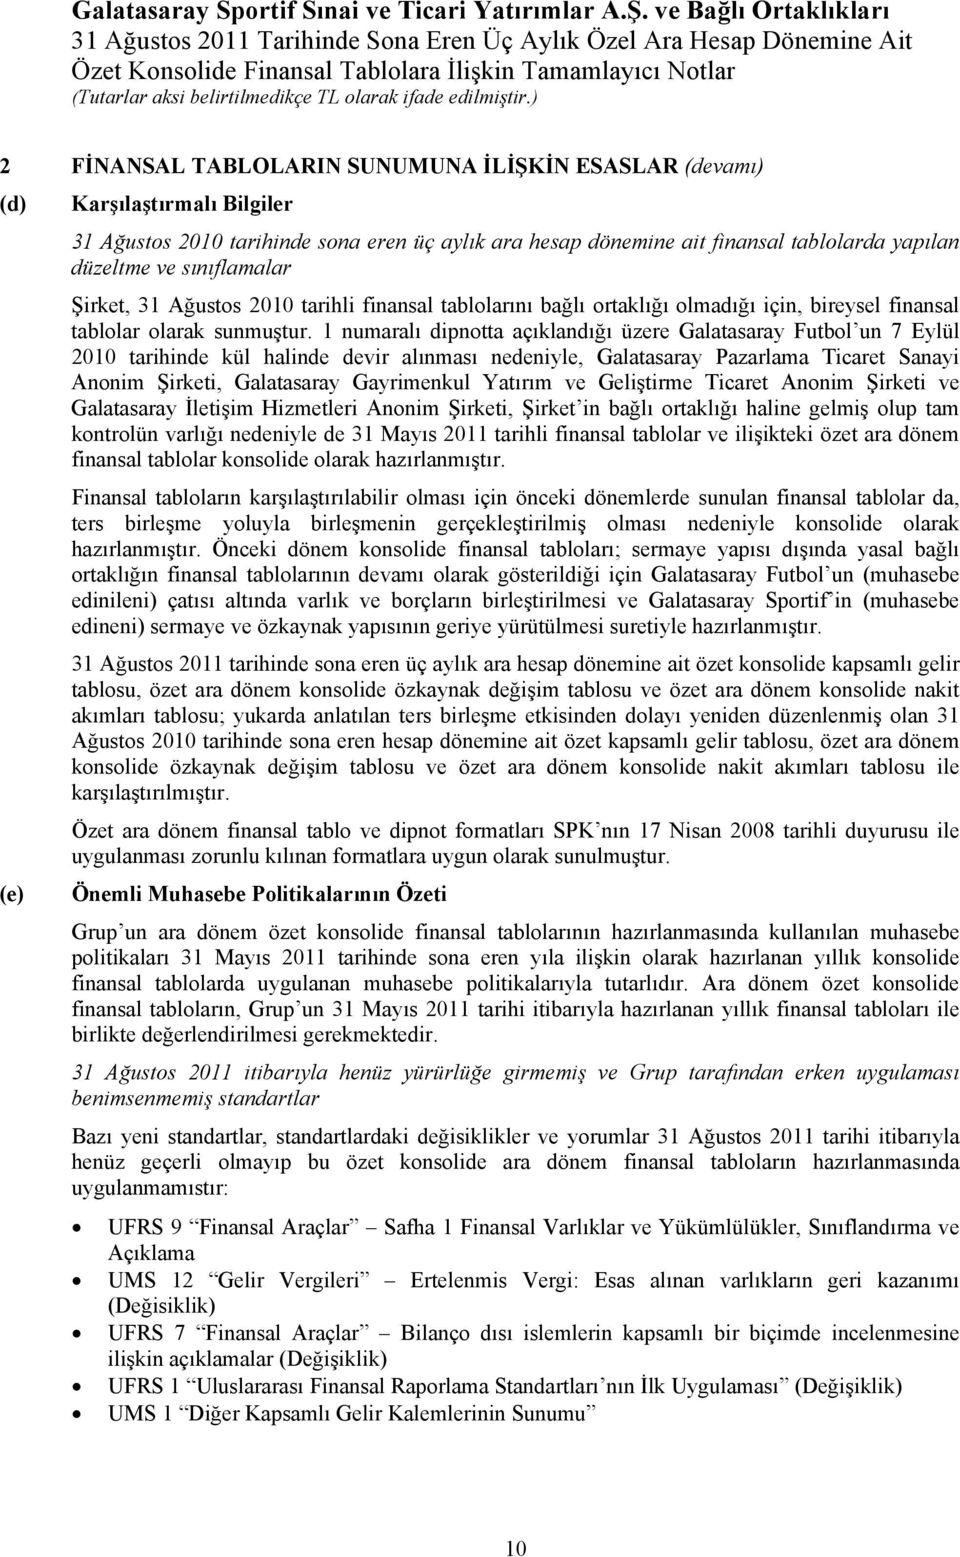 1 numaralı dipnotta açıklandığı üzere Galatasaray Futbol un 7 Eylül 2010 tarihinde kül halinde devir alınması nedeniyle, Galatasaray Pazarlama Ticaret Sanayi Anonim Şirketi, Galatasaray Gayrimenkul